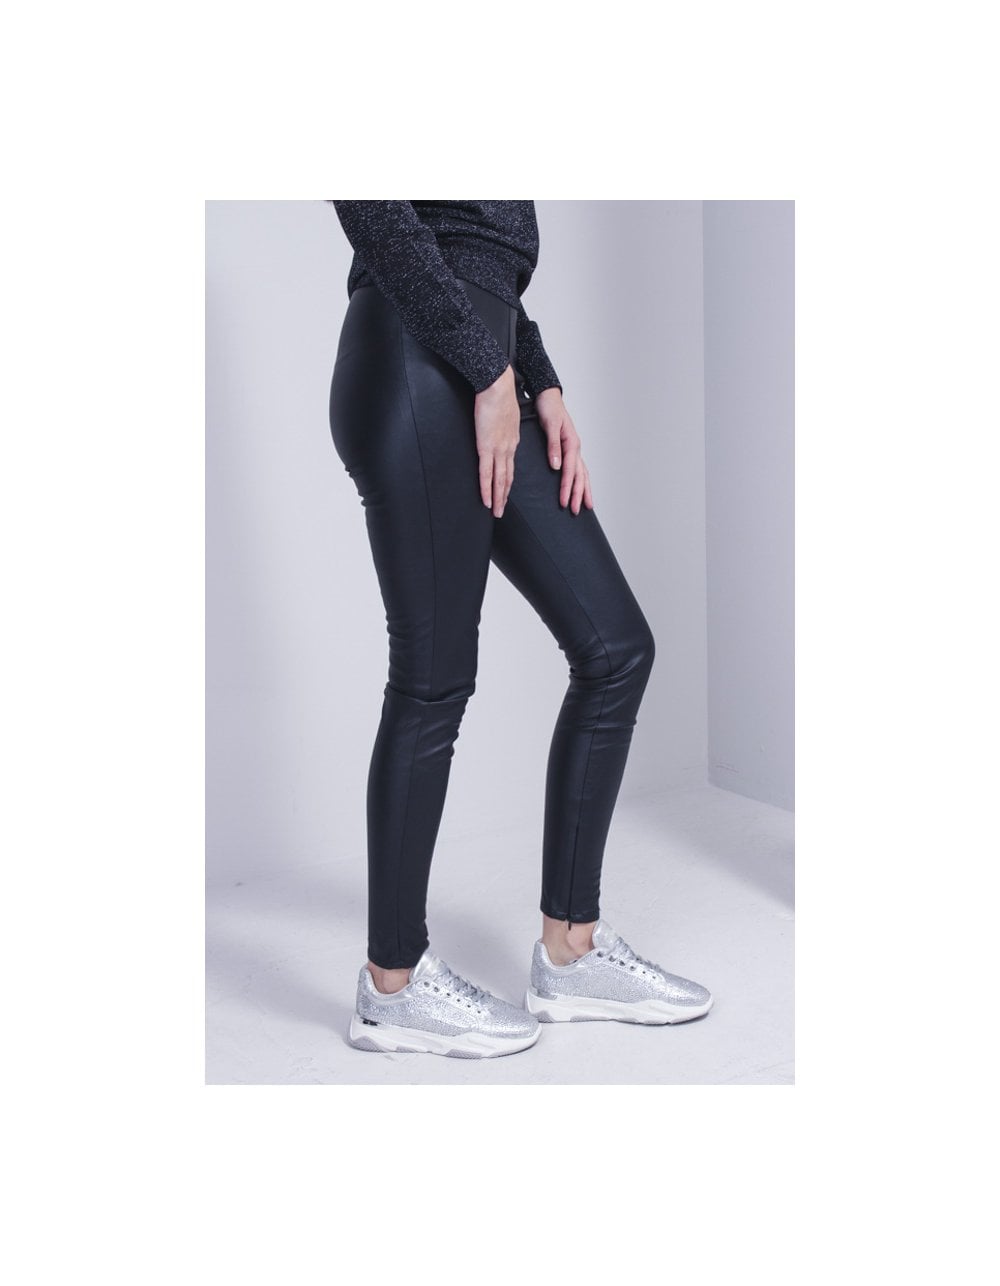 Lipsy Black Faux Leather Leggings Trousers 💖UK Size 10 BNWT | eBay